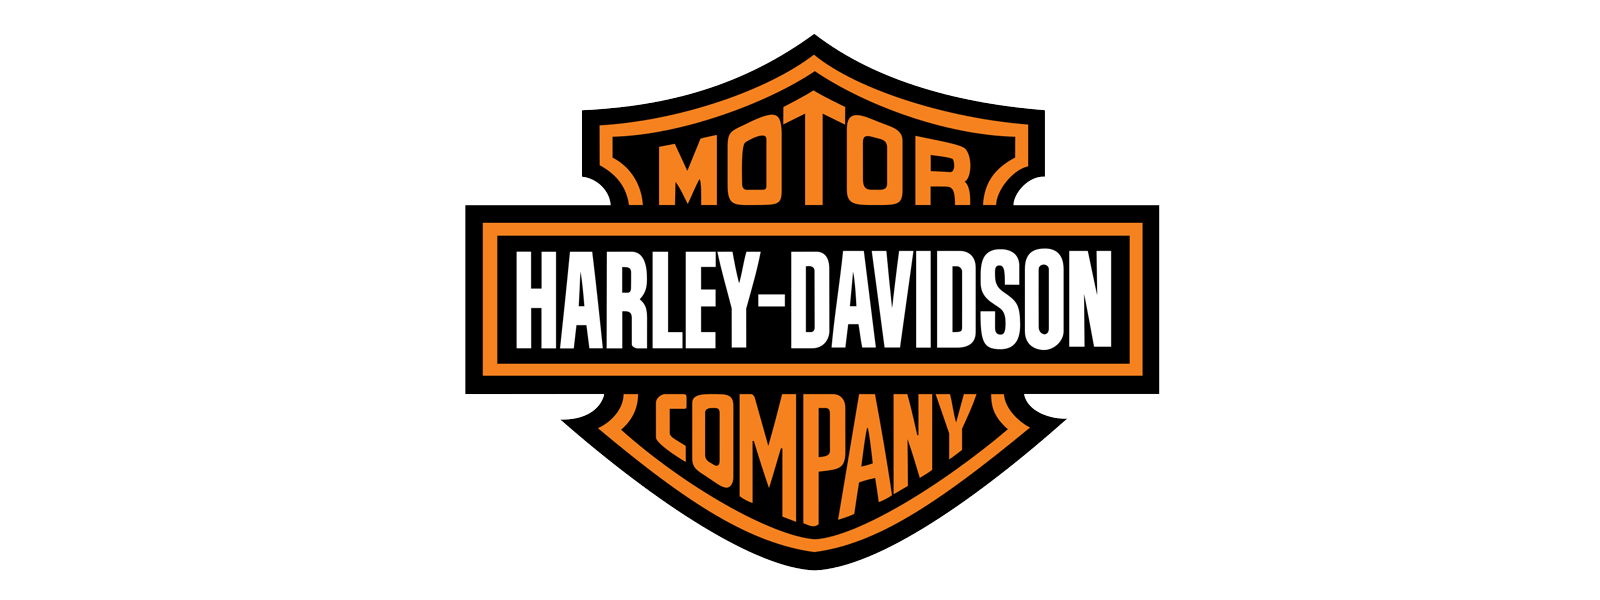 CurrentWare Customer Harley-Davidson